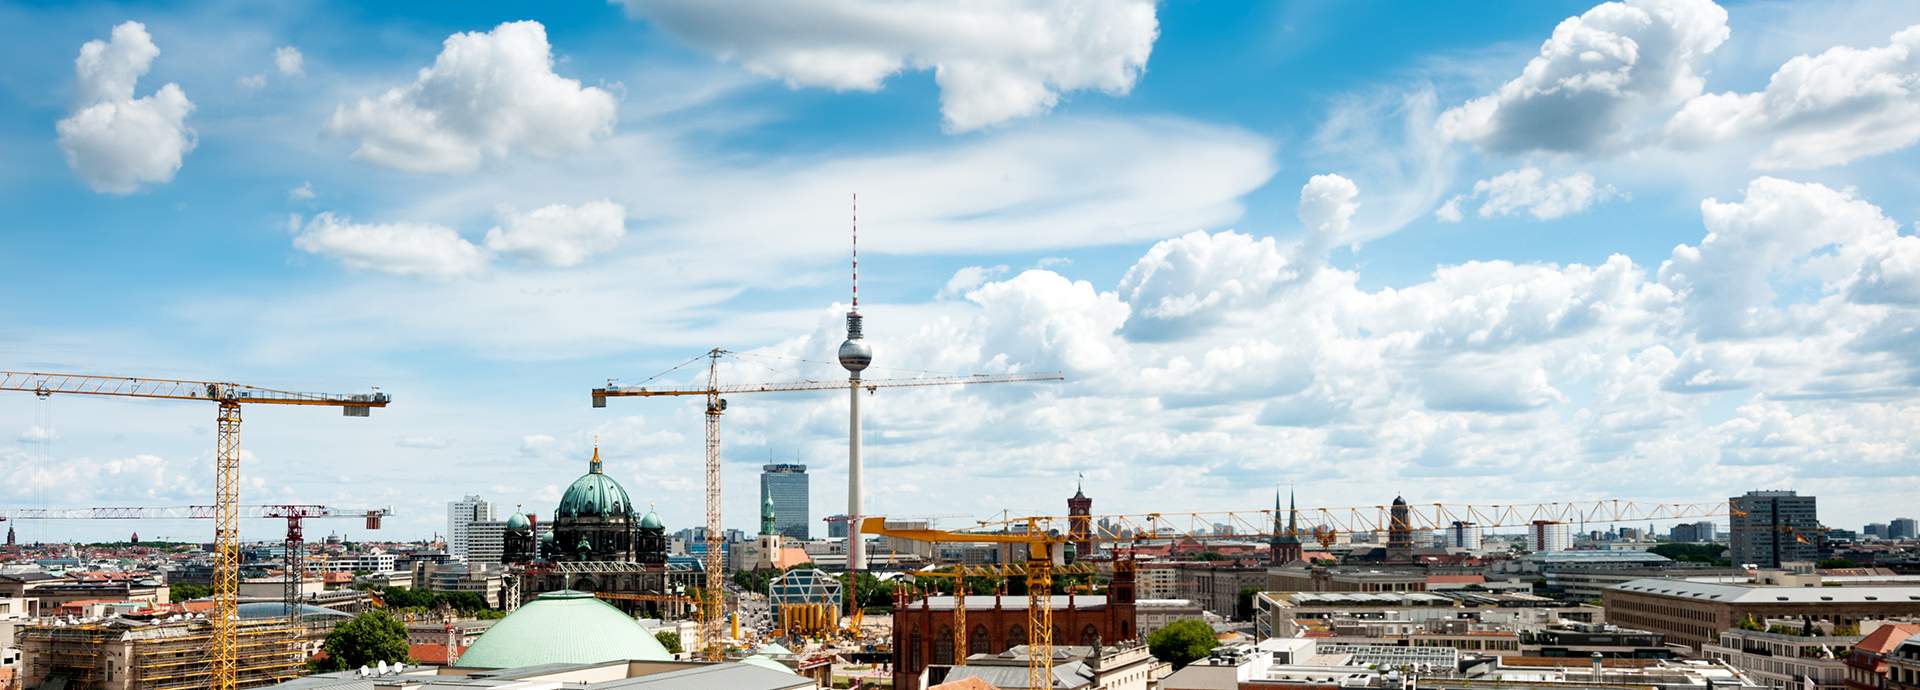 Skyline von Berlin mit zahlreichen Baukränen aus der Baubranche